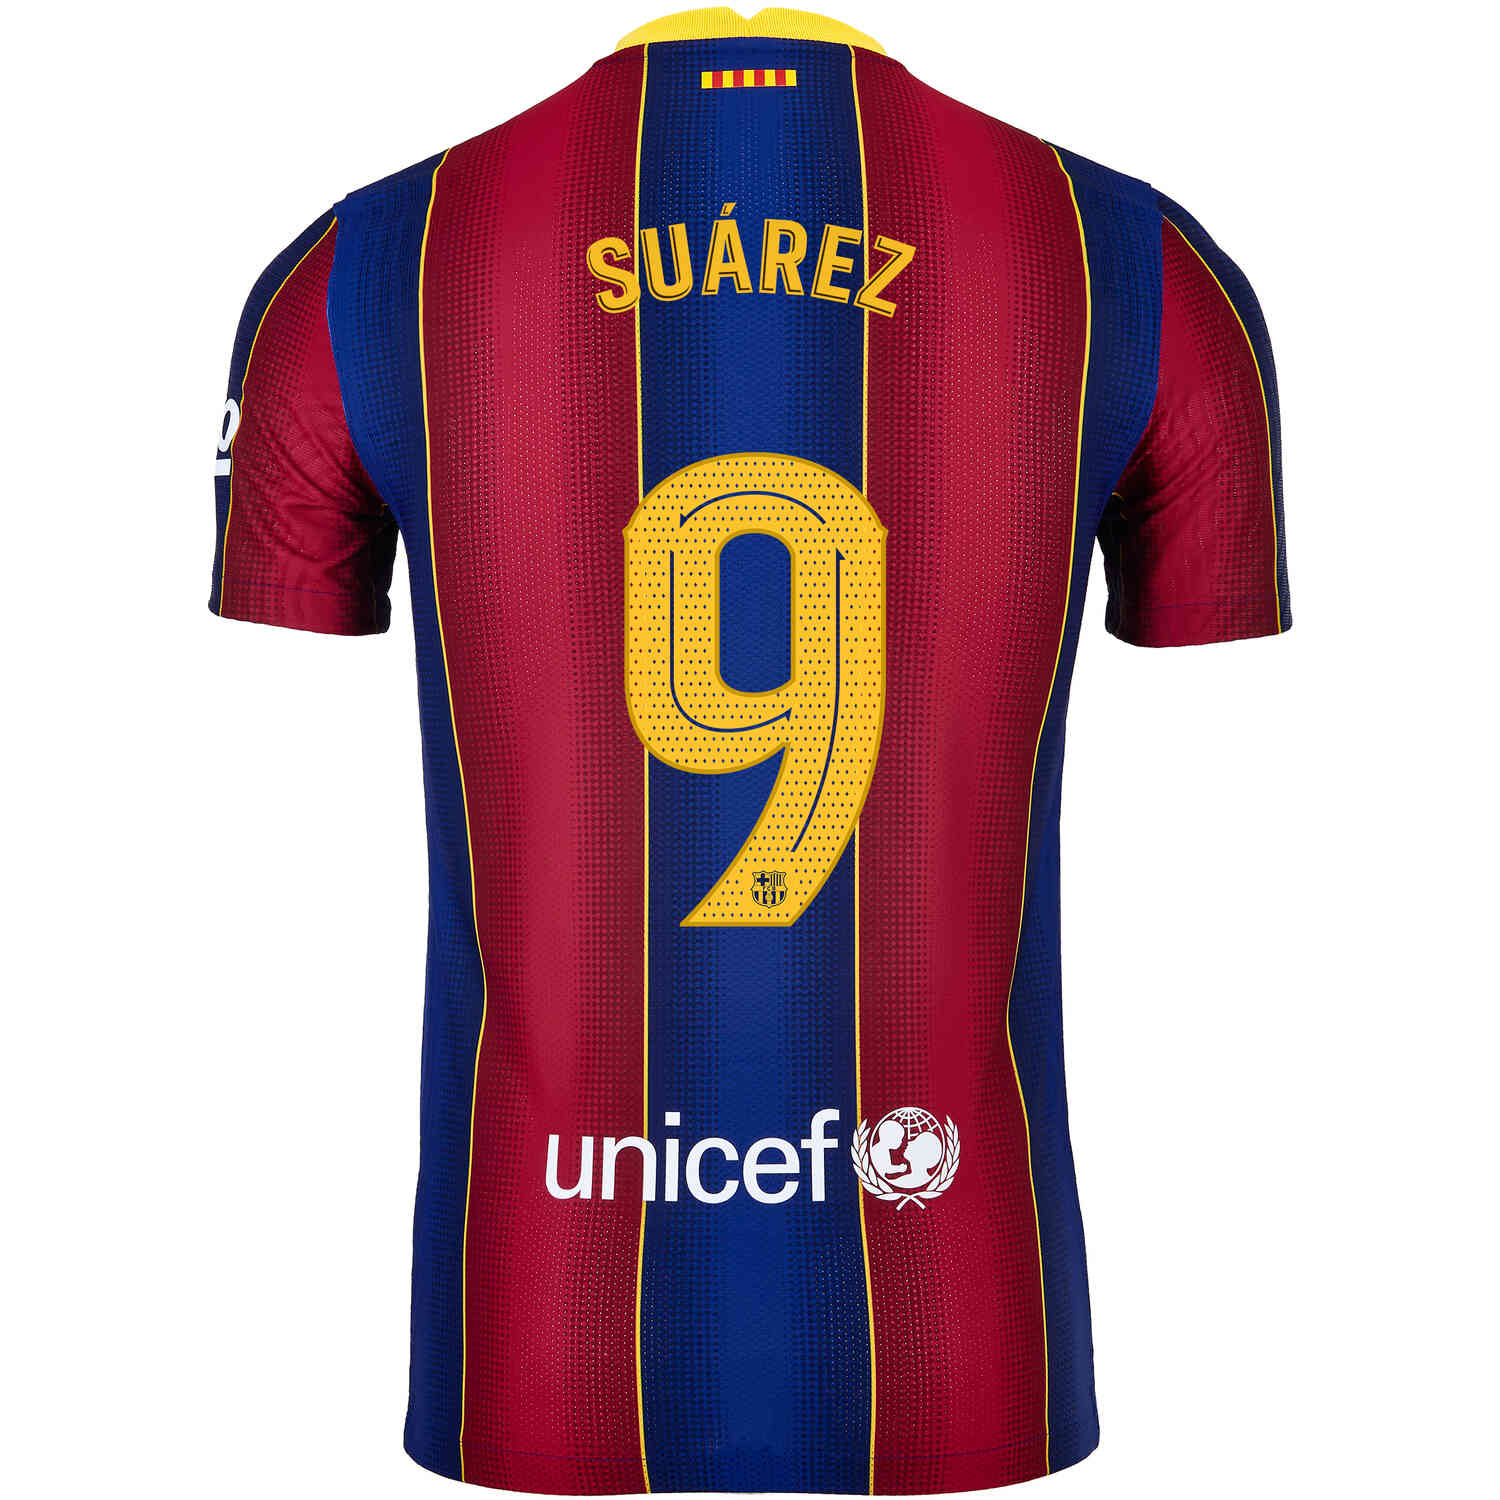 scheepsbouw kasteel Voorrecht 2020/21 Nike Luis Suarez Barcelona Home Match Jersey - SoccerPro